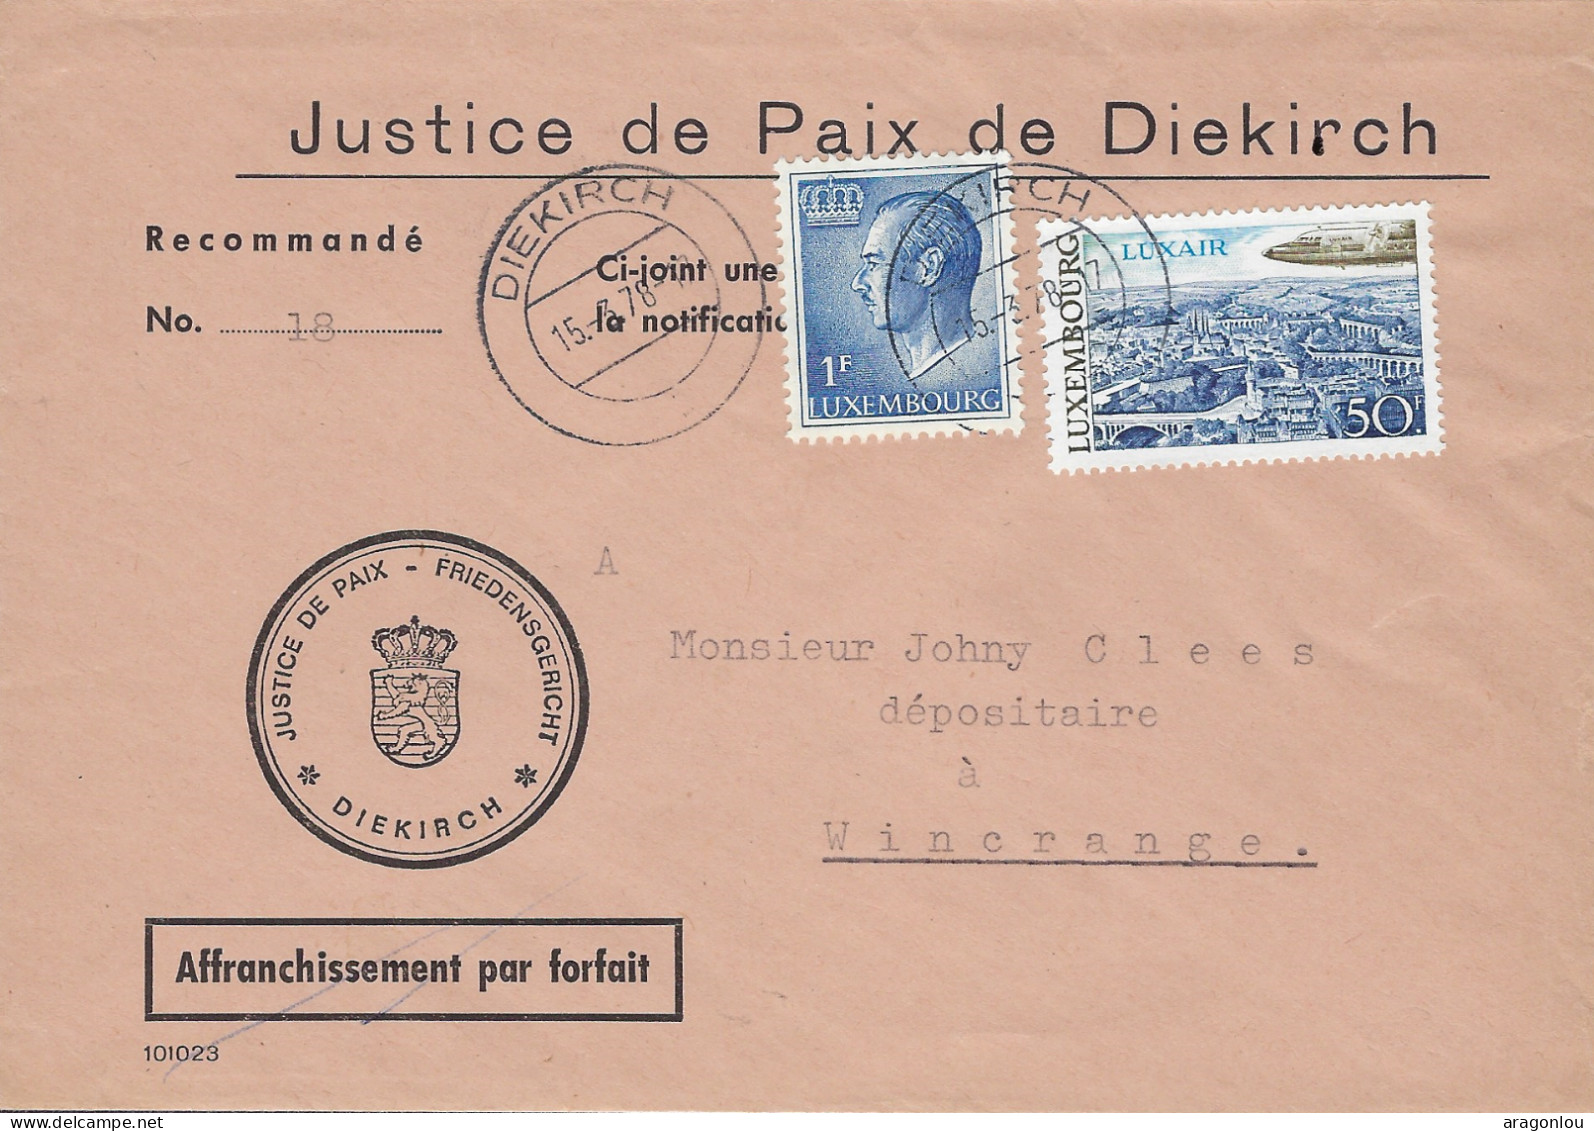 Luxembourg - Luxemburg - Lettre      1978  -  JUSTICE DE PAIX DE DIEKIRCH - Lettres & Documents